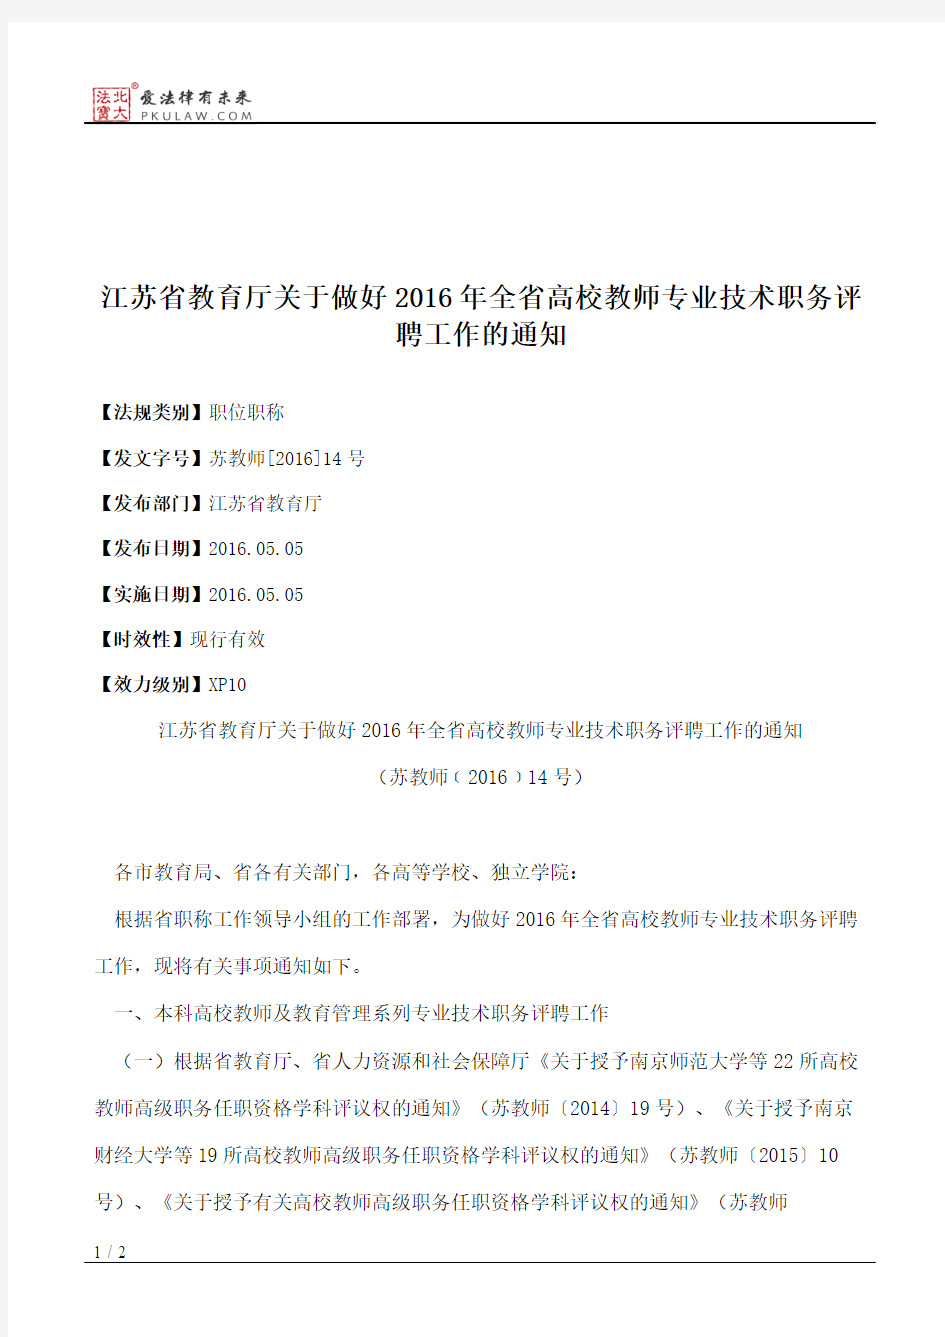 江苏省教育厅关于做好2016年全省高校教师专业技术职务评聘工作的通知